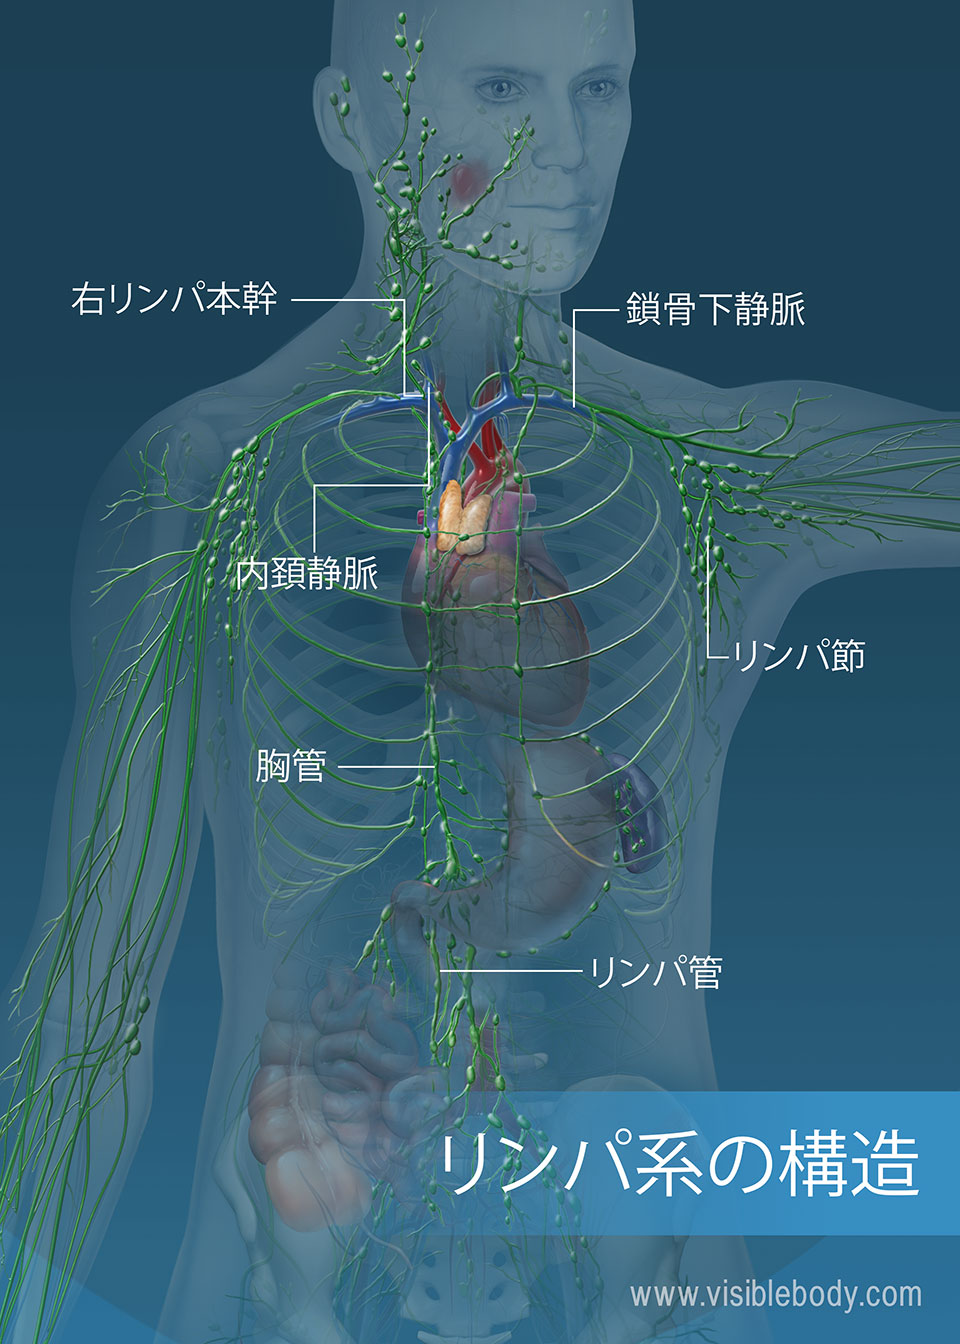 リンパ管ネットワークは、胴体と腕全体にわたっています。 主要構造物には、胸管、右リンパ本幹、およびリンパ管が含まれます。